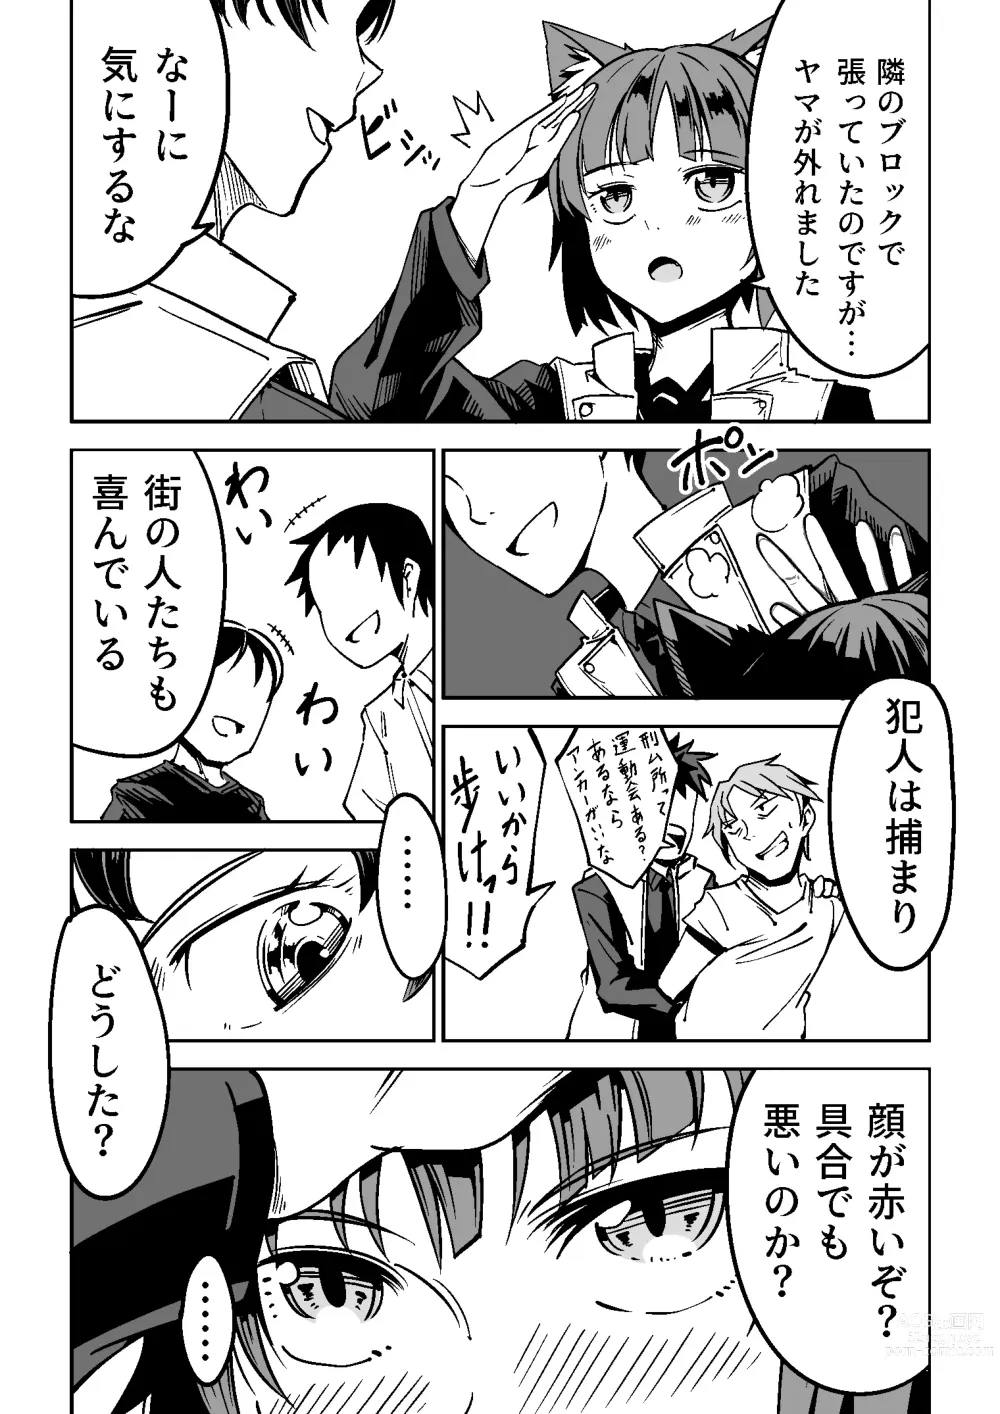 Page 5 of doujinshi NOID Episode:Julius